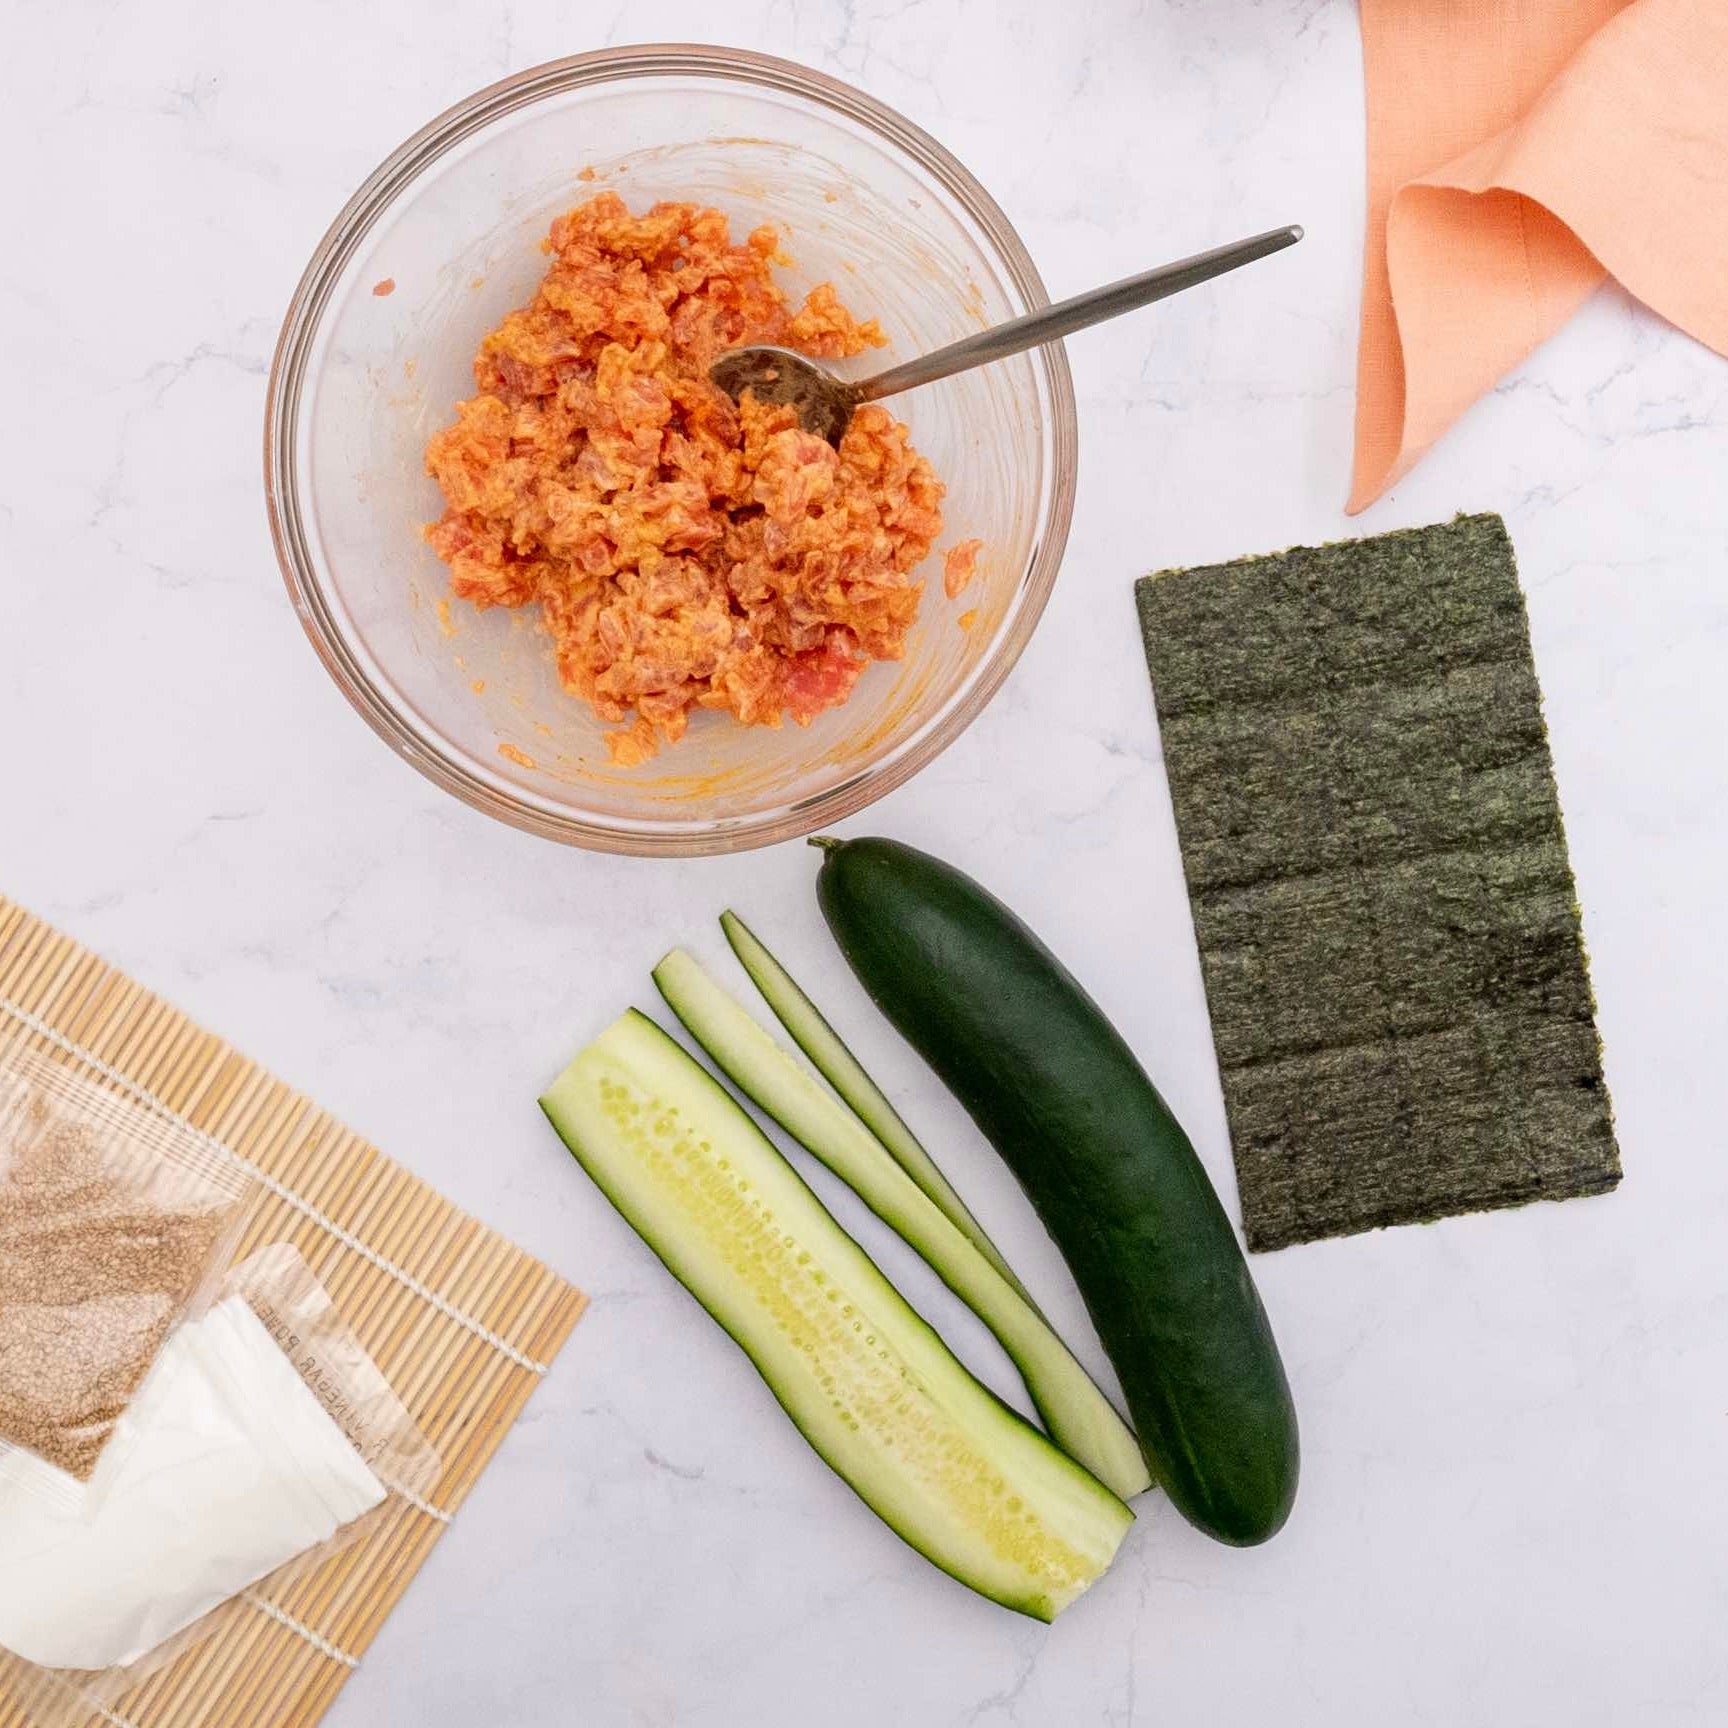  Global Grub DIY Sushi Making Kit - Sushi Kit Includes Sushi Rice,  Nori Sushi Seaweed, Rice Vinegar Powder, Sesame Seeds, Wasabi Powder,  Bamboo Sushi Rolling Mat, Instructions, Makes 48 Pieces 